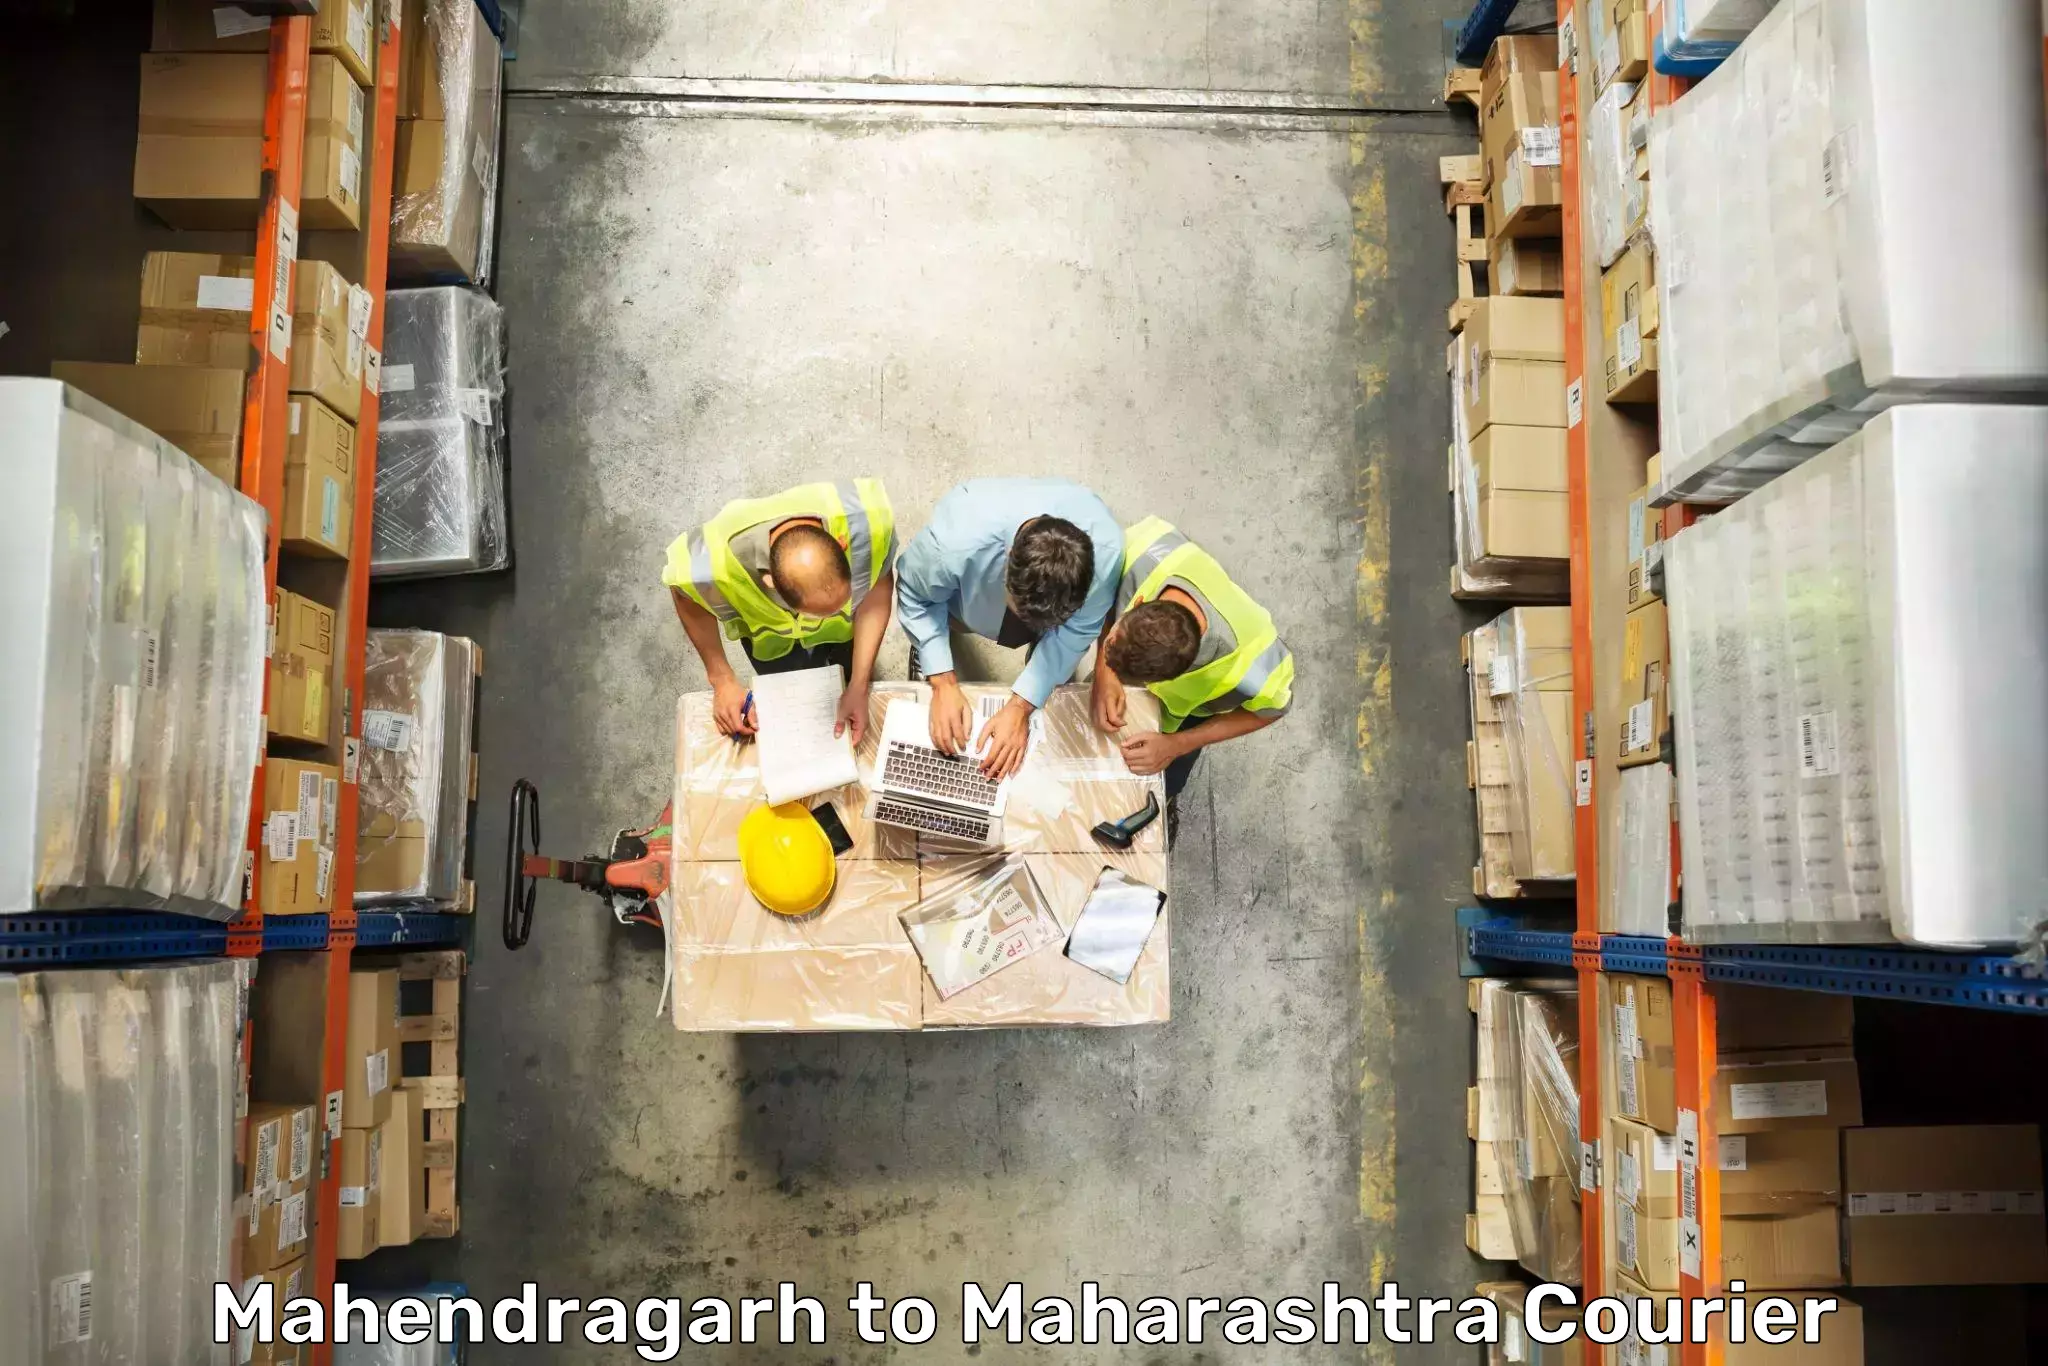 Luggage shipping service Mahendragarh to Raigarh Maharashtra